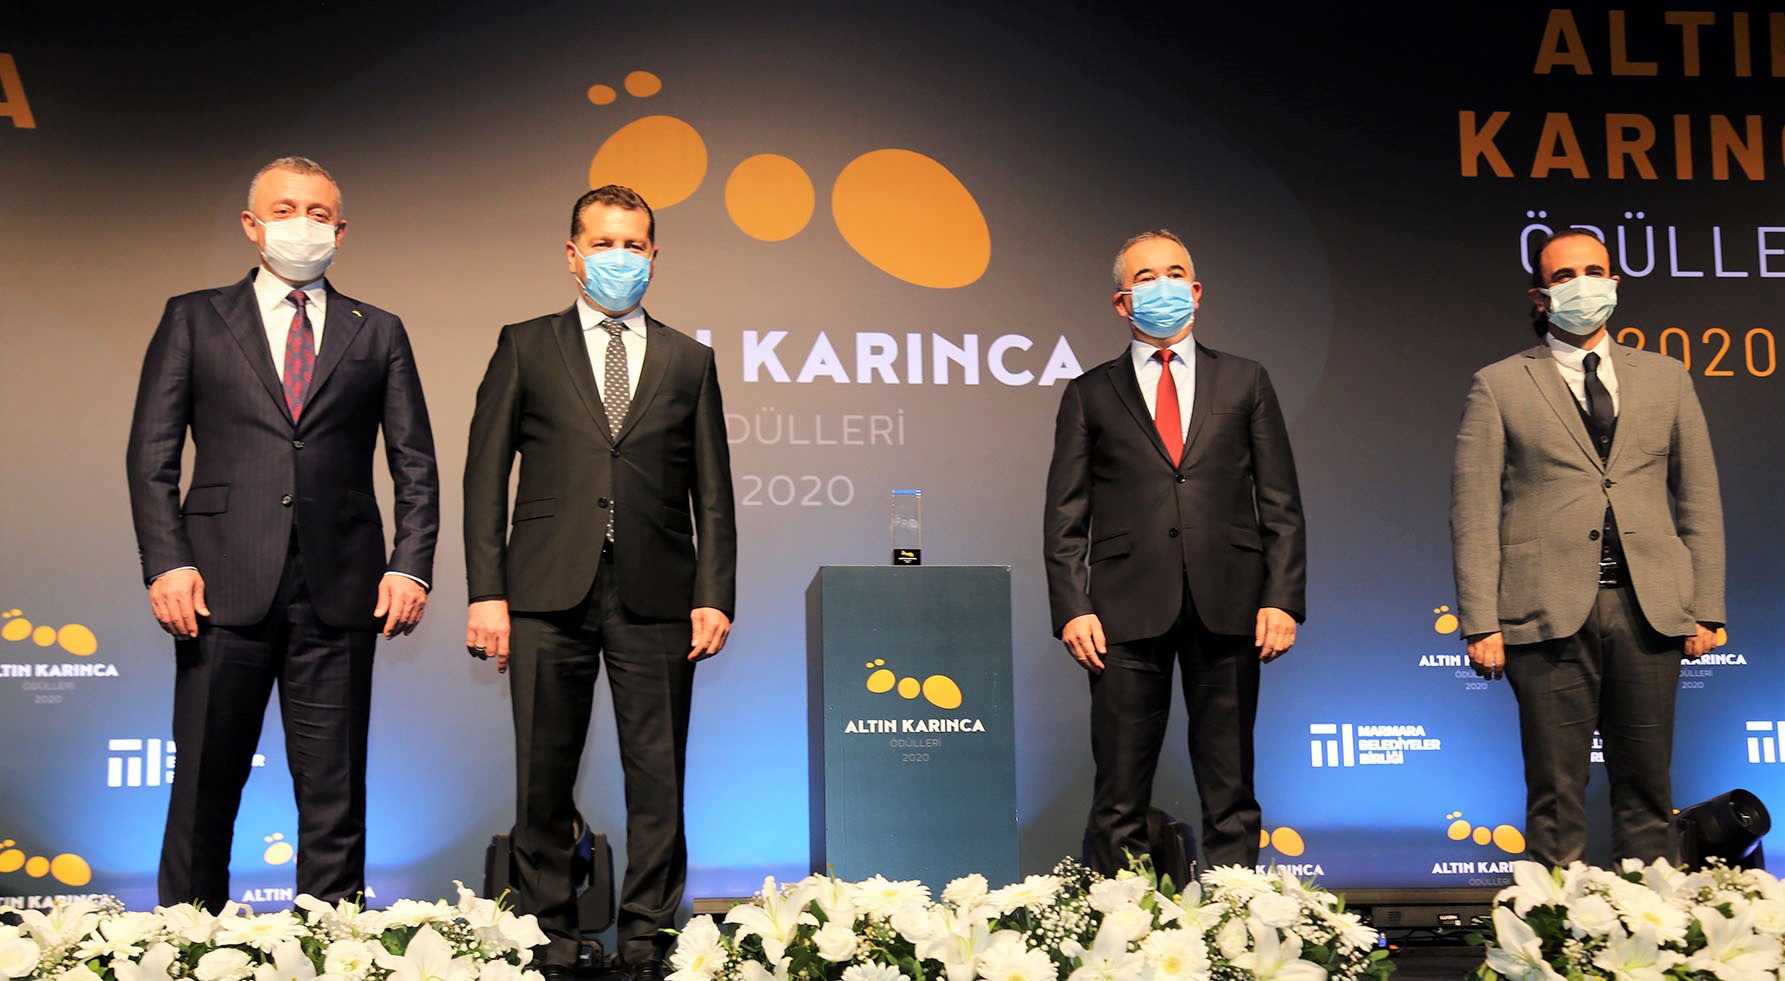 Ataşehir Belediyesi Altın Karaca’da birinci oldu